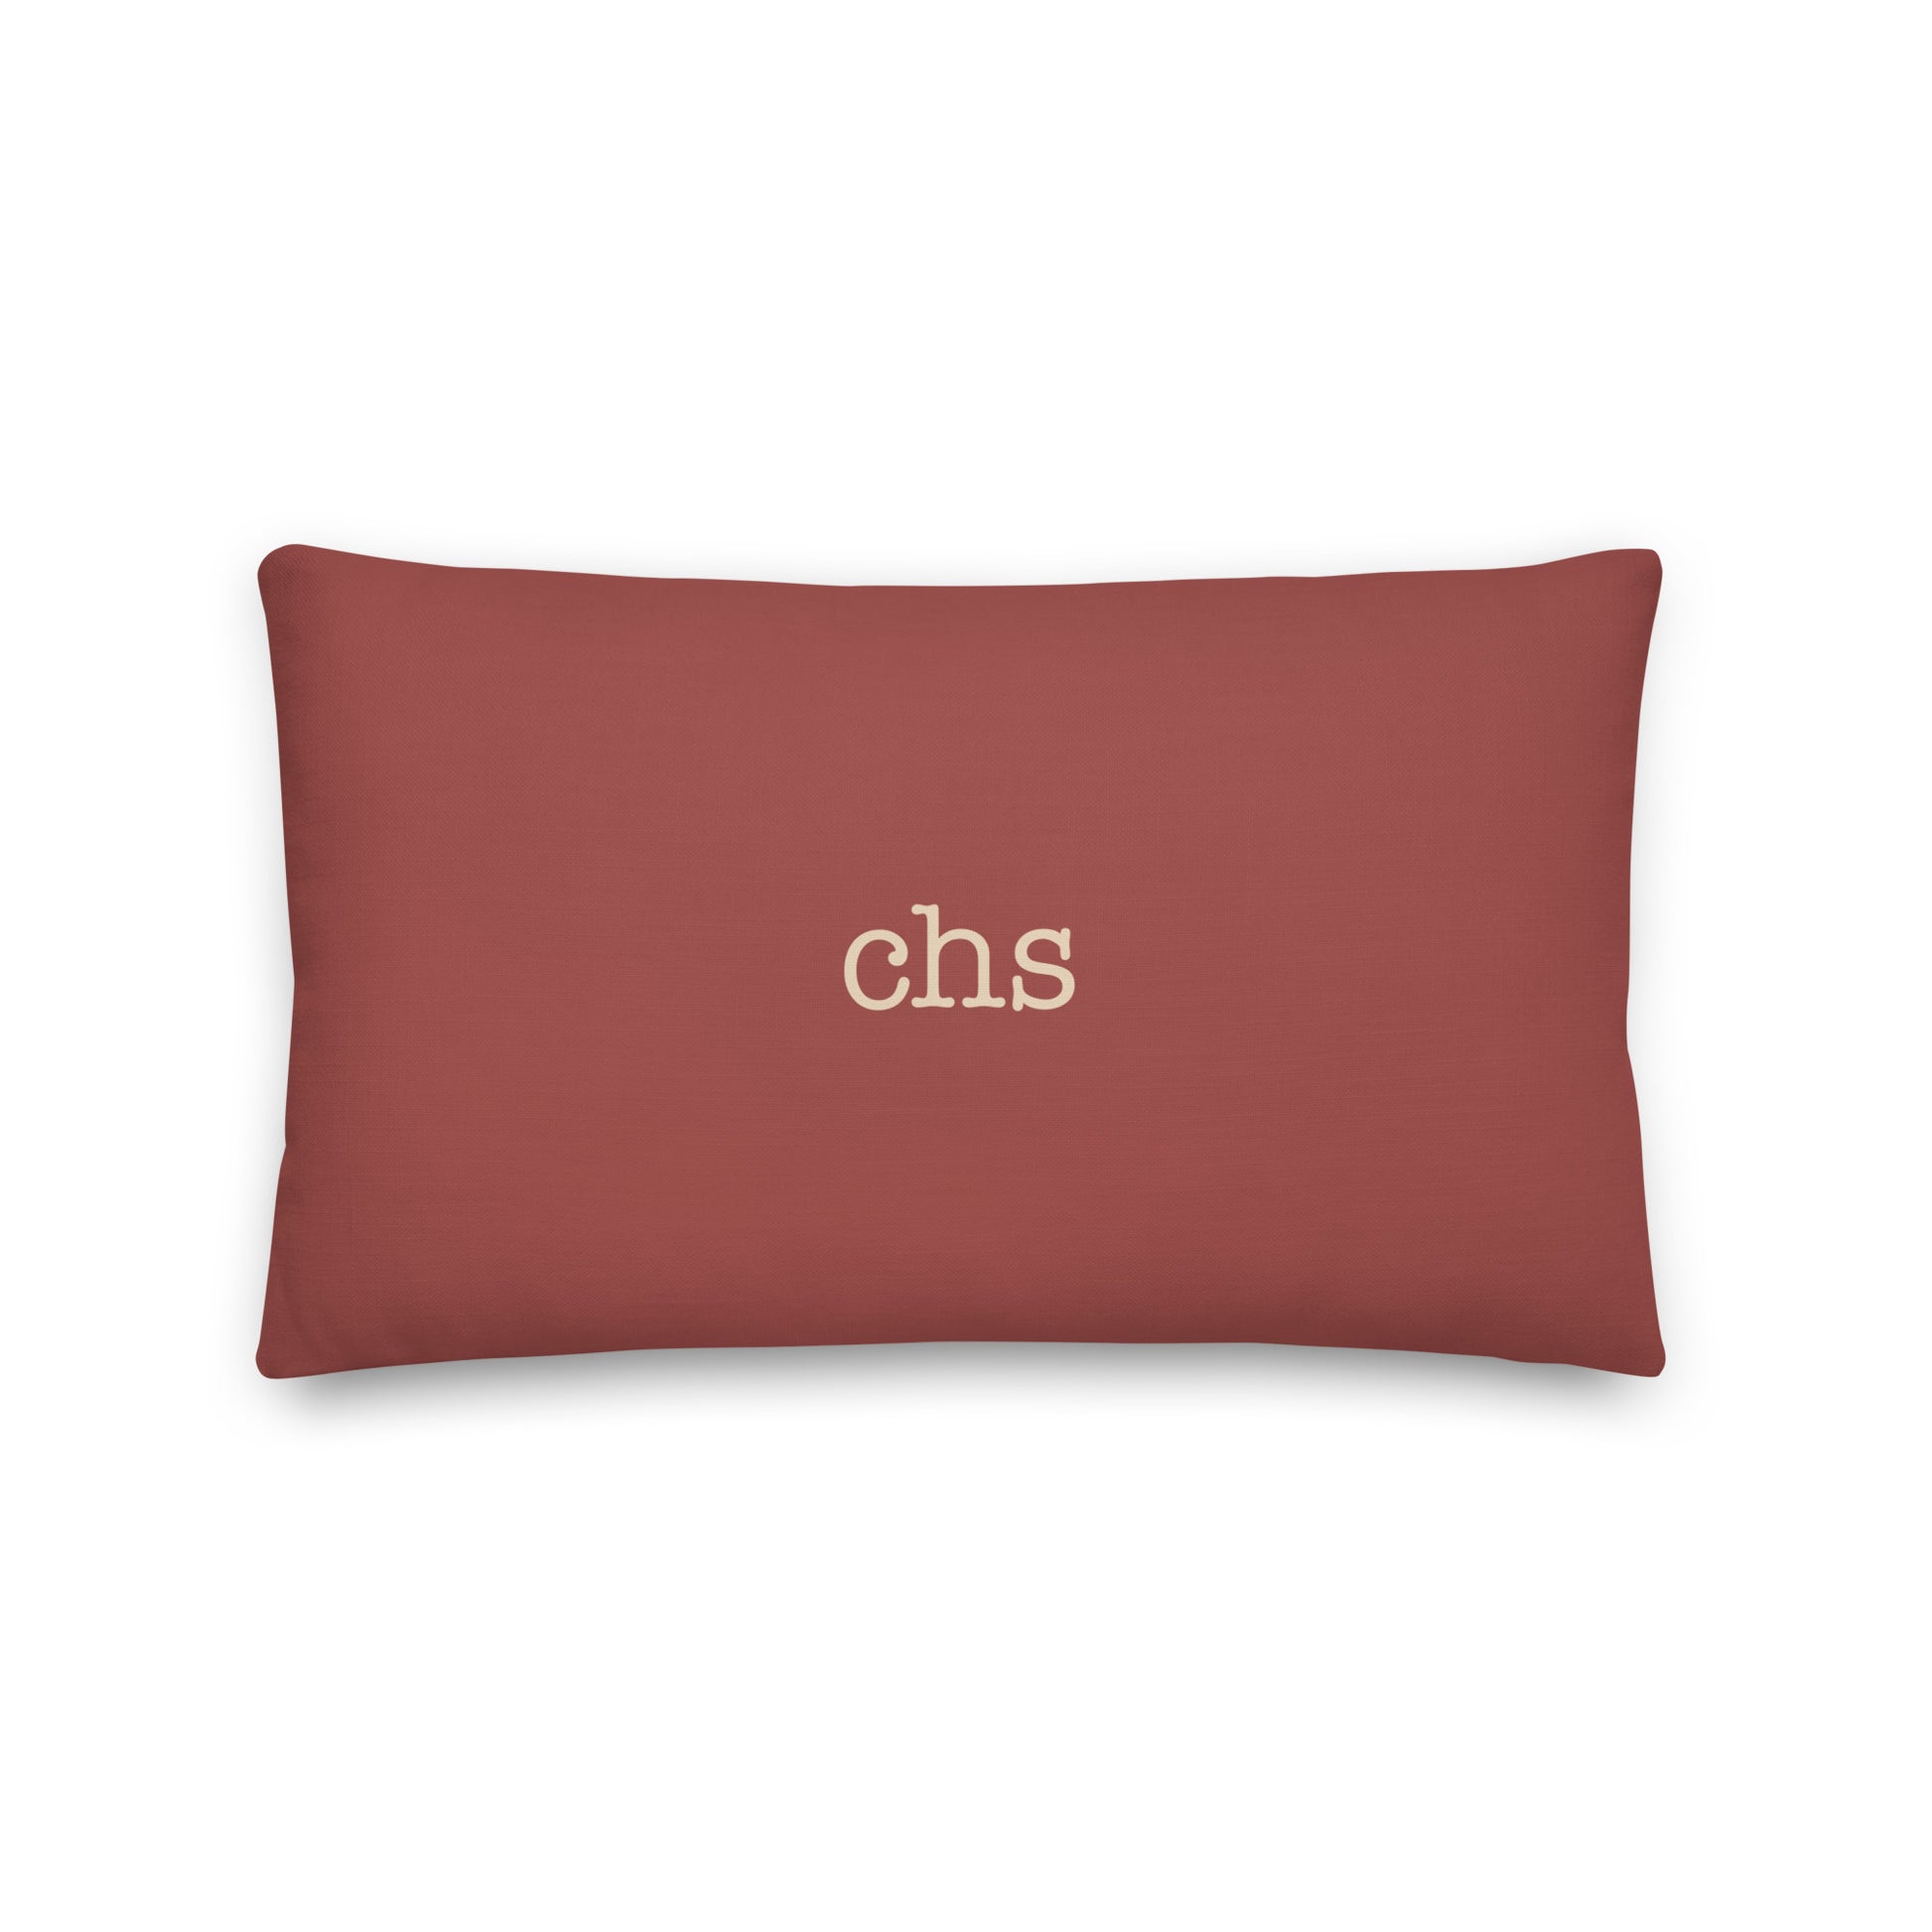 Typewriter Pillow - Terra Cotta • CHS Charleston • YHM Designs - Image 02